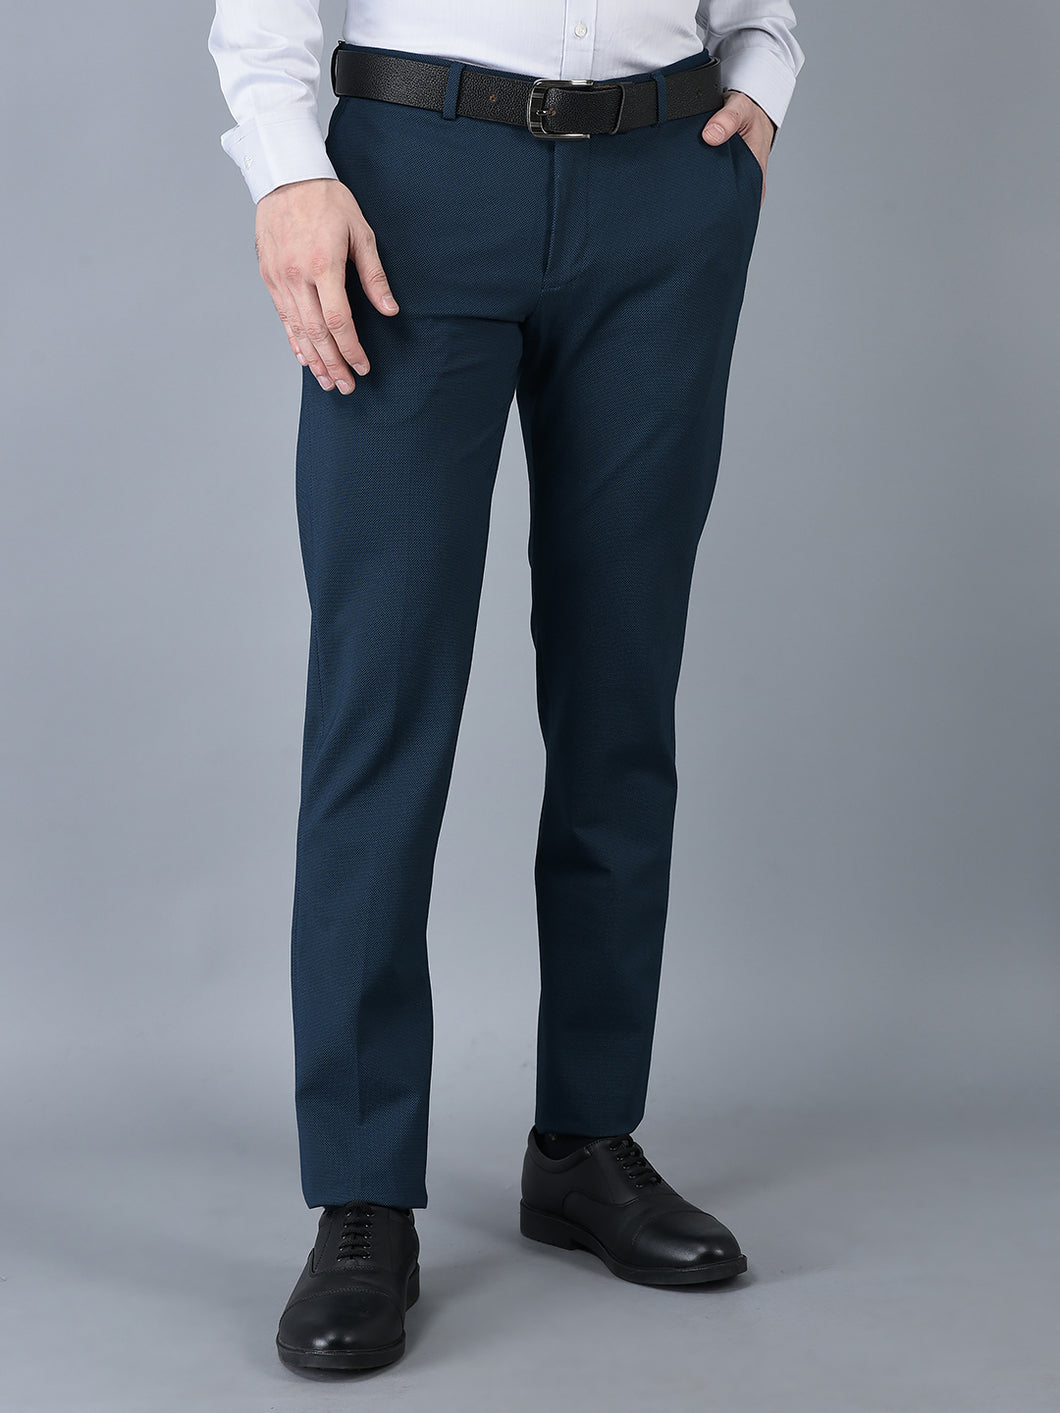 CANOE MEN Formal Trouser  BLUE Color